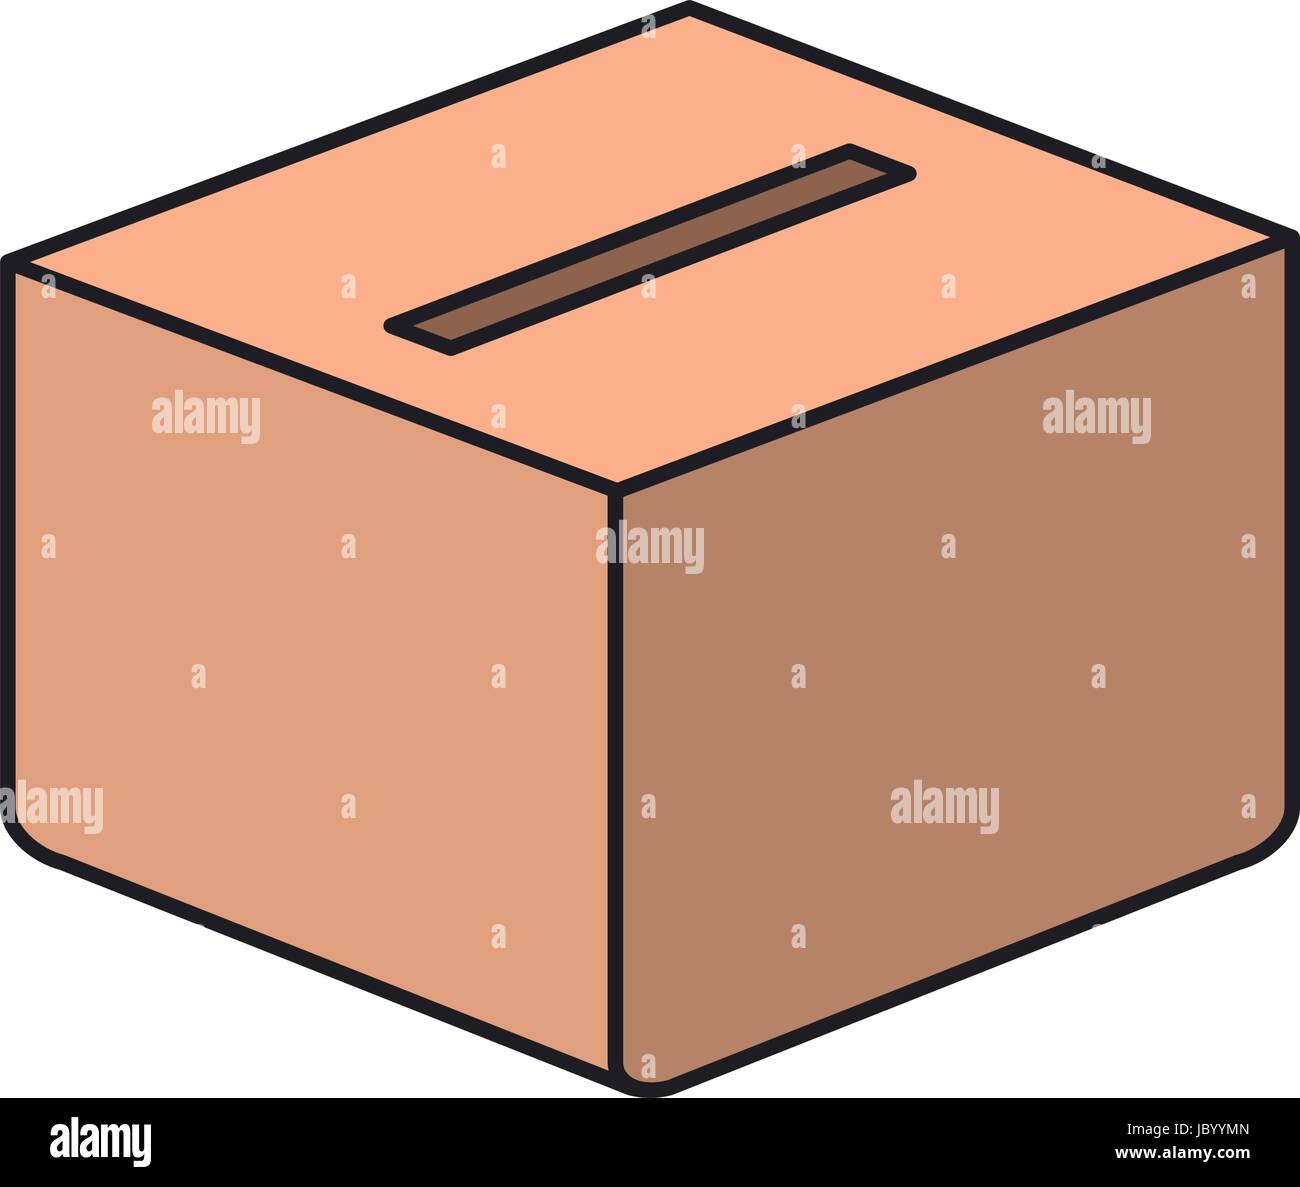 farbenfrohe Silhouette-Karton-Box mit Schlitz Stock-Vektorgrafik - Alamy